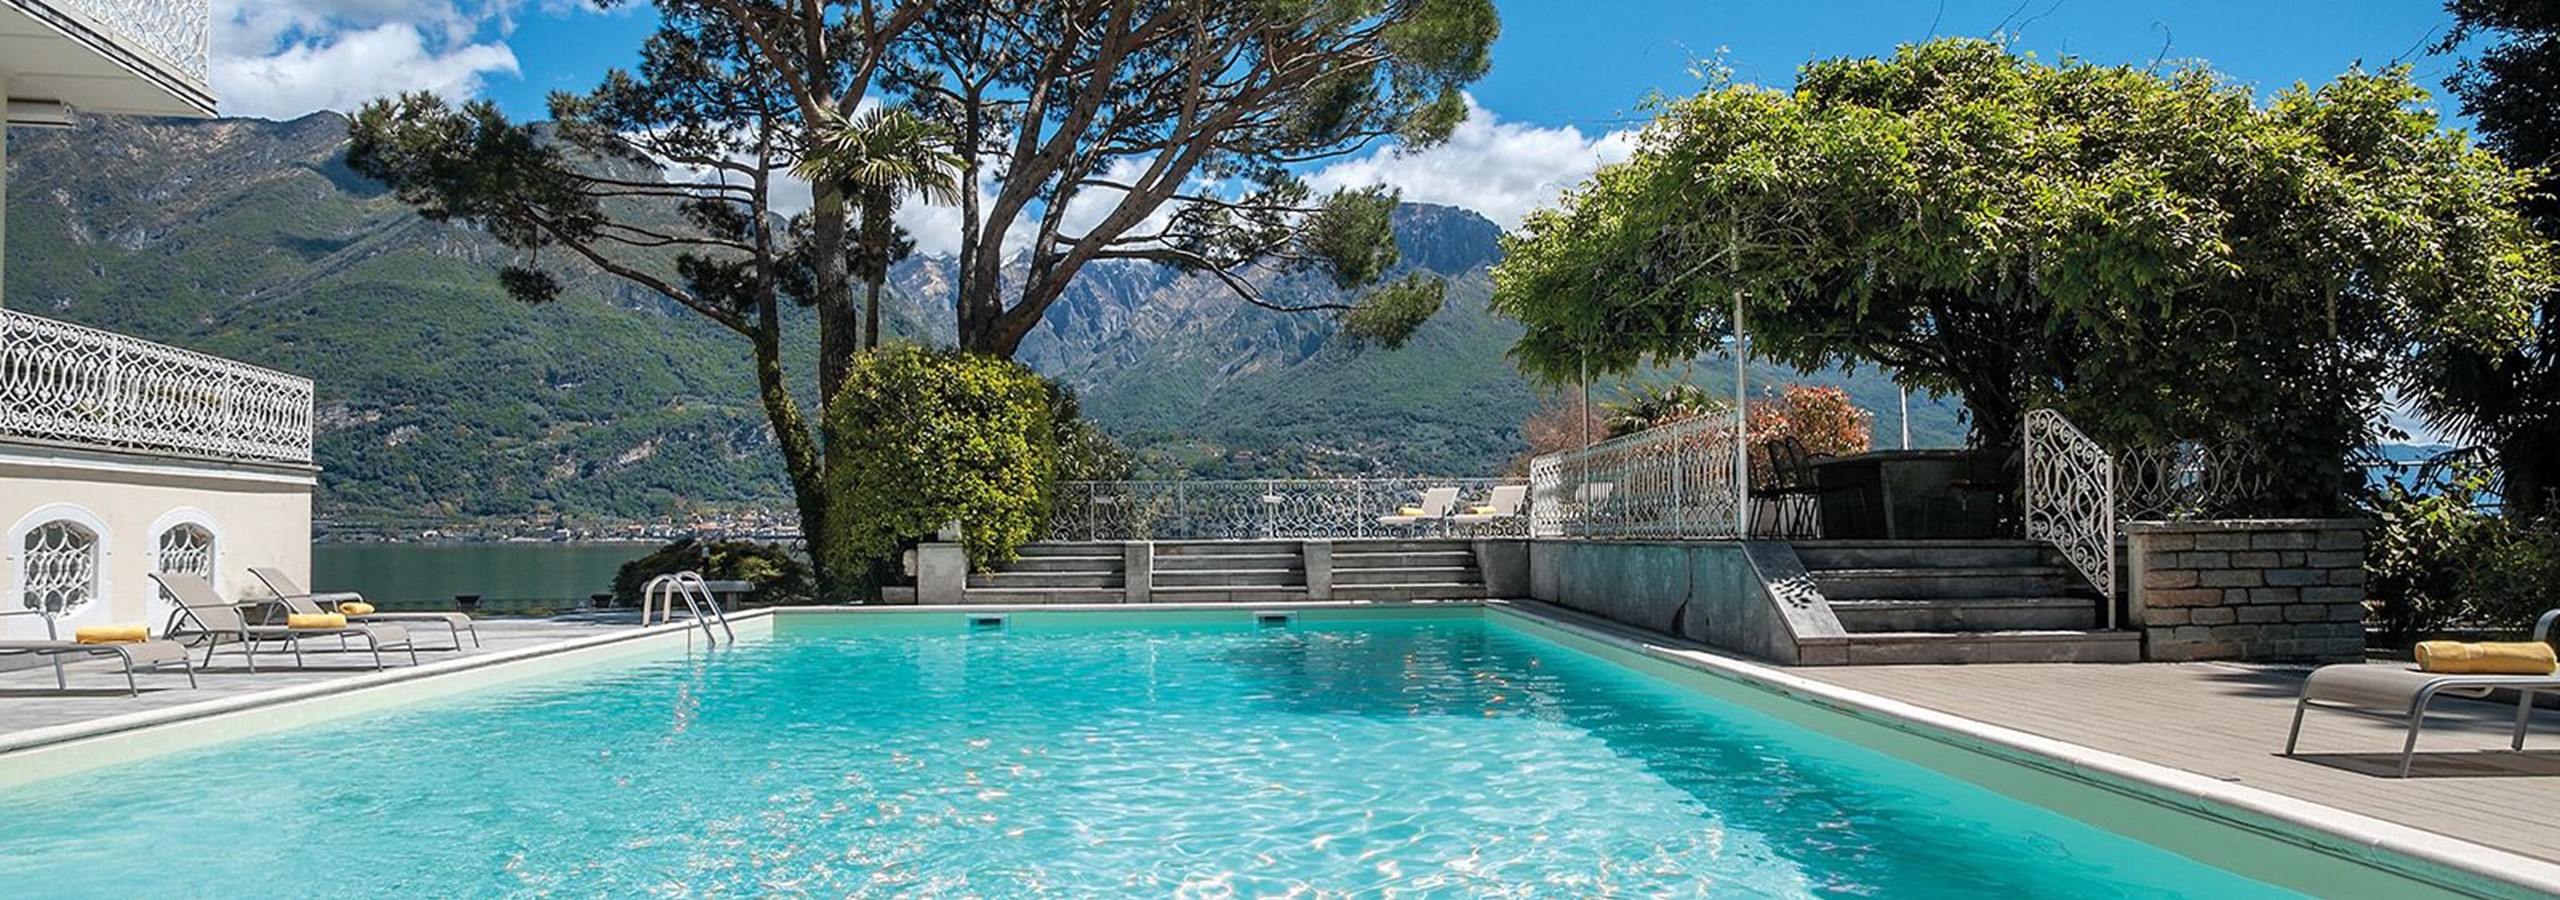 Villas in Italy | The Best Villa Holidays in Italy